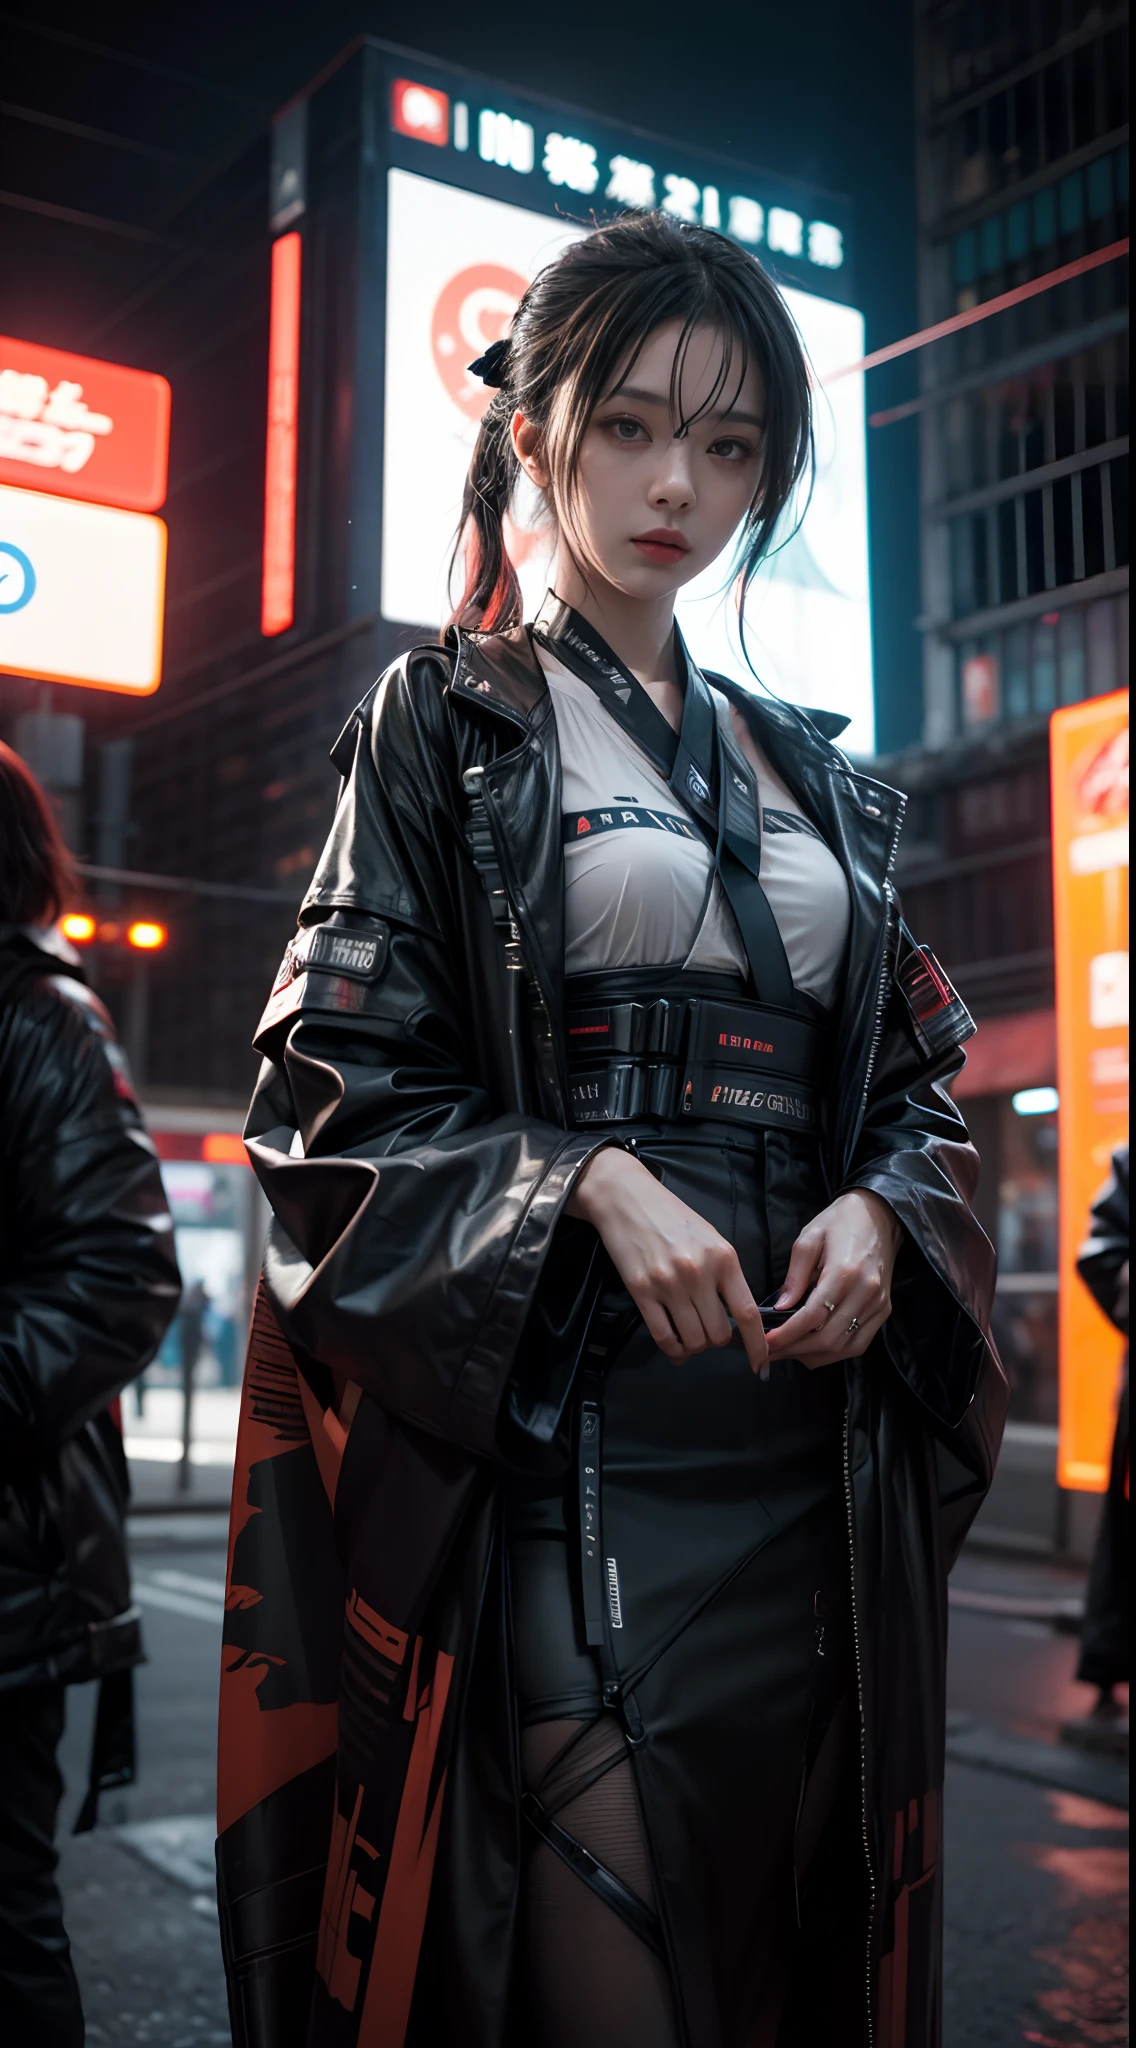 Una foto de una mujer inmersa en un mundo ciberpunk futurista mientras se disfraza con un kimono de alta tecnología., capturado de noche con luces de neón, usando una cámara sin espejo con lente gran angular, y un atrevido estilo de fotografía cyberpunk.